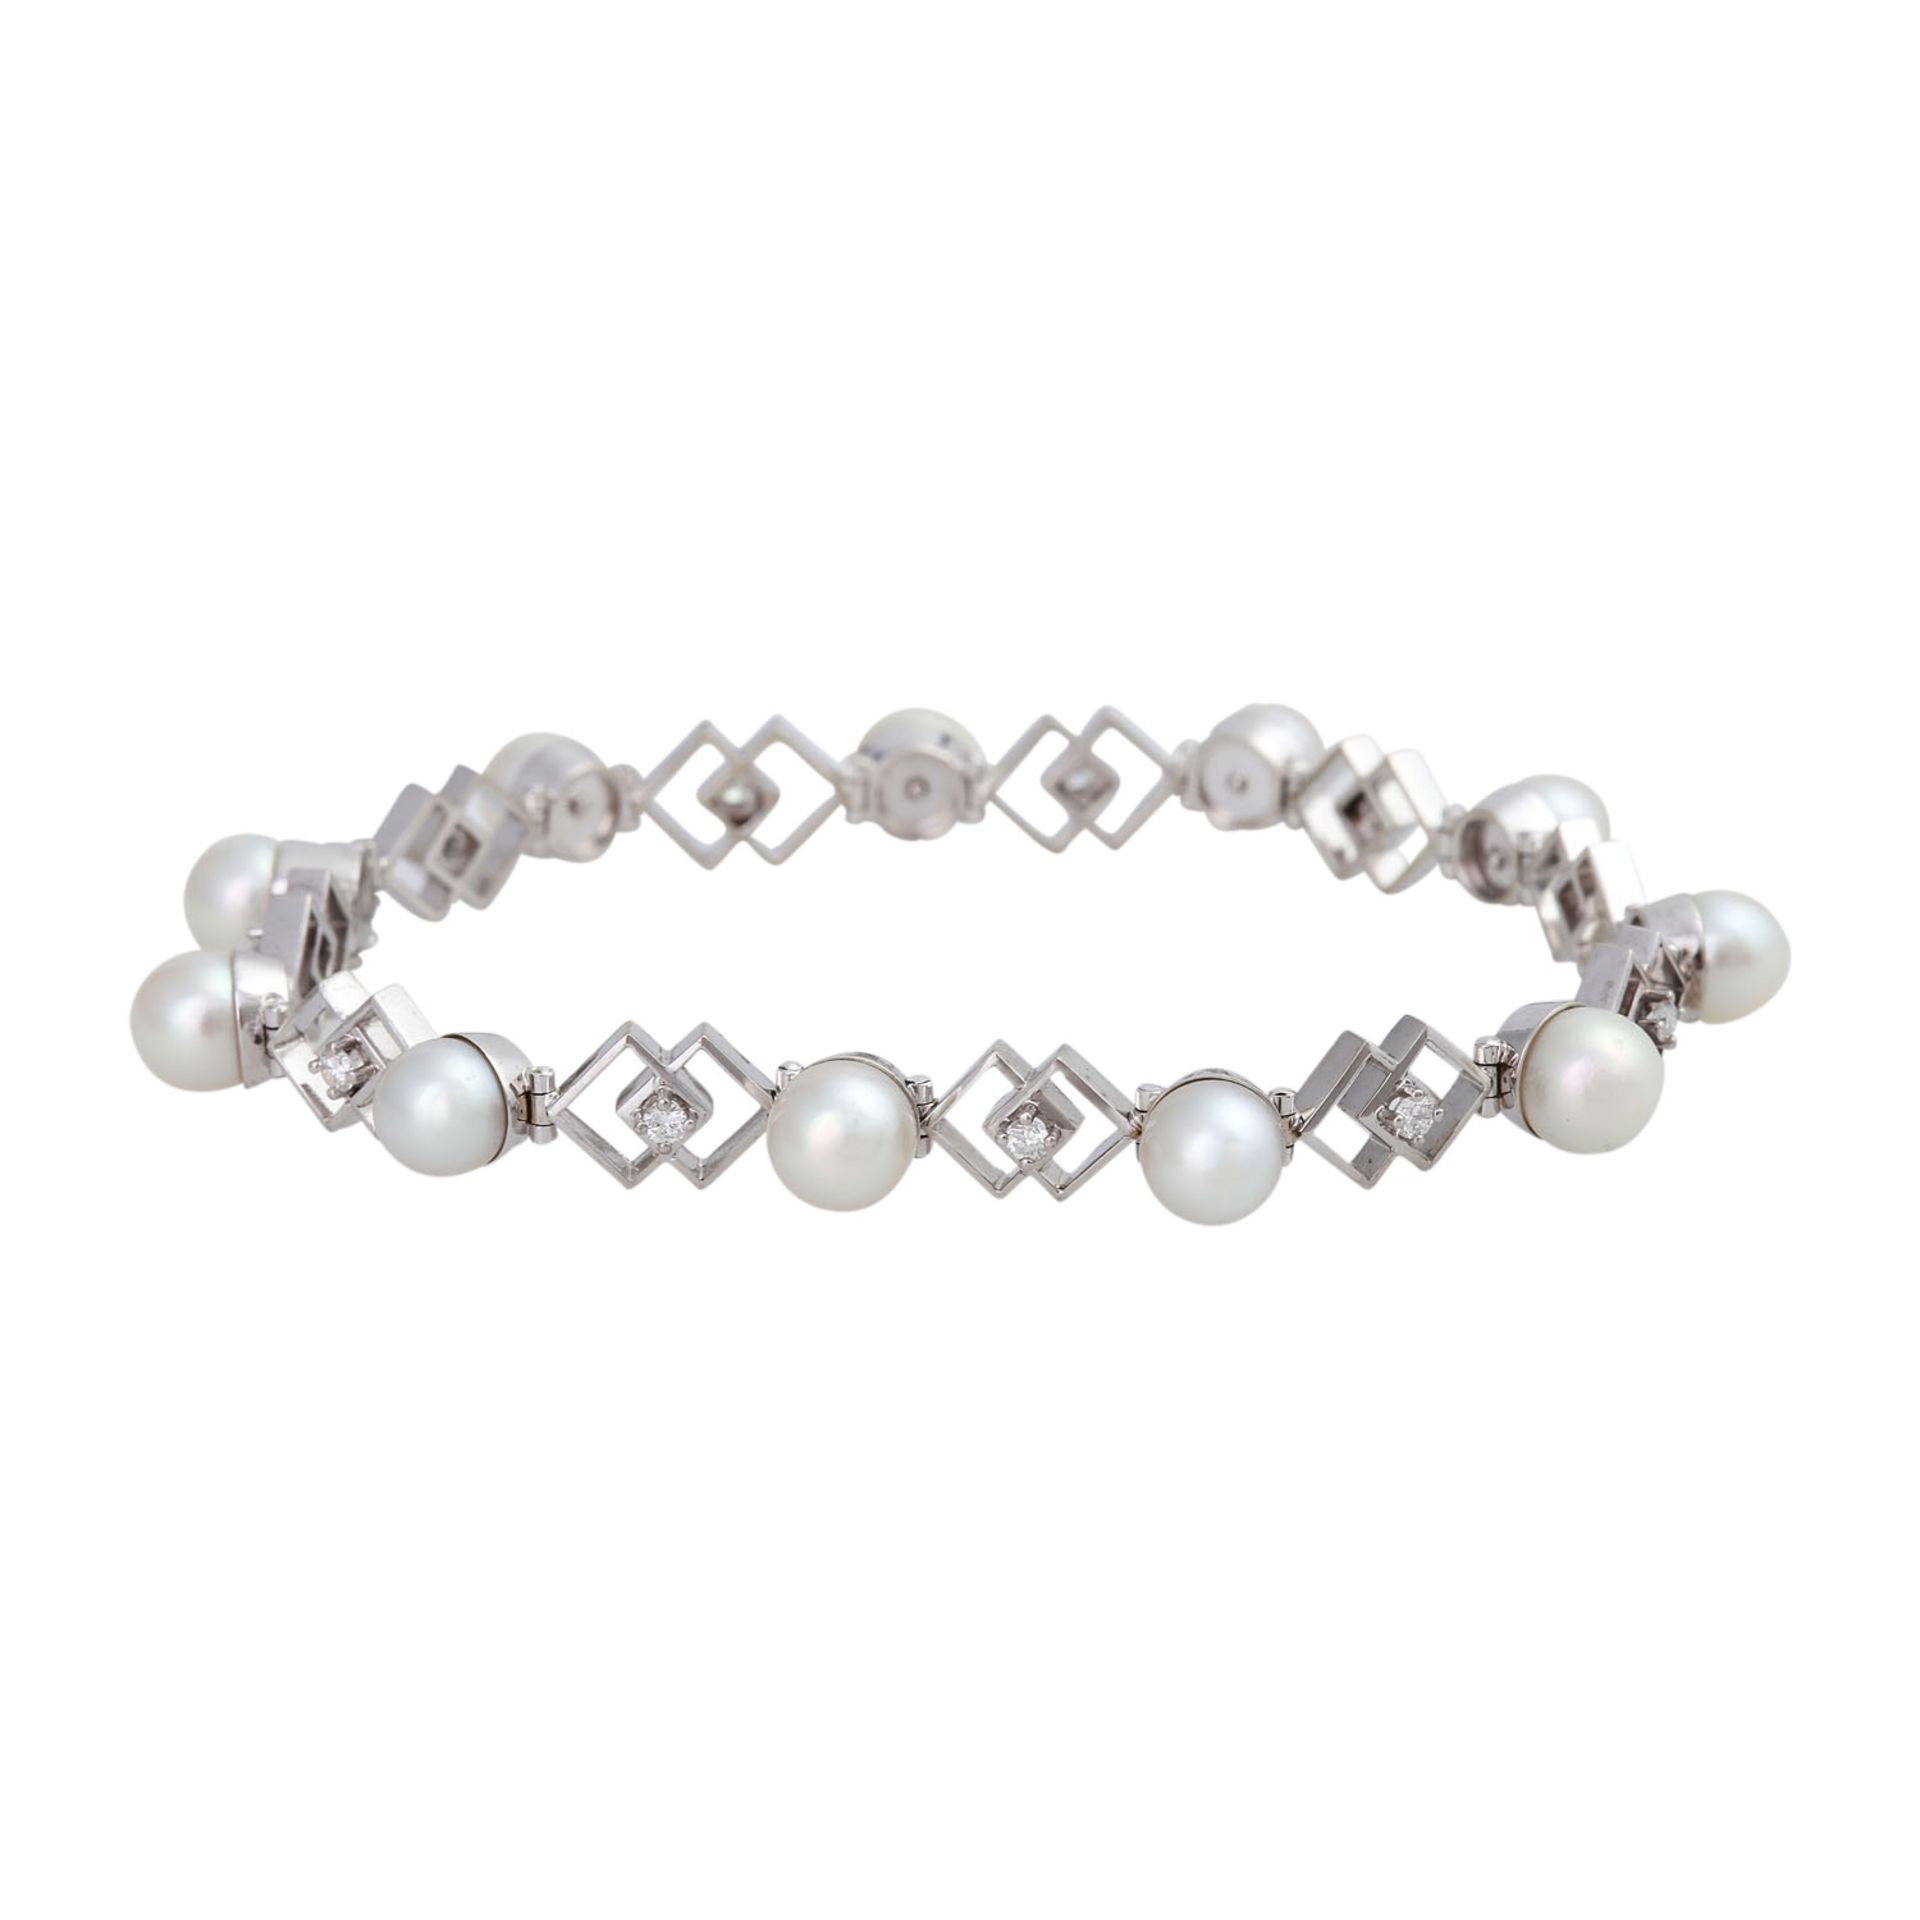 Armband mit Perlen und Brillantenvon zus. ca. 0,4 ct, gute Farbe u. Reinheit, Zuchtperlen ca. 6,2-